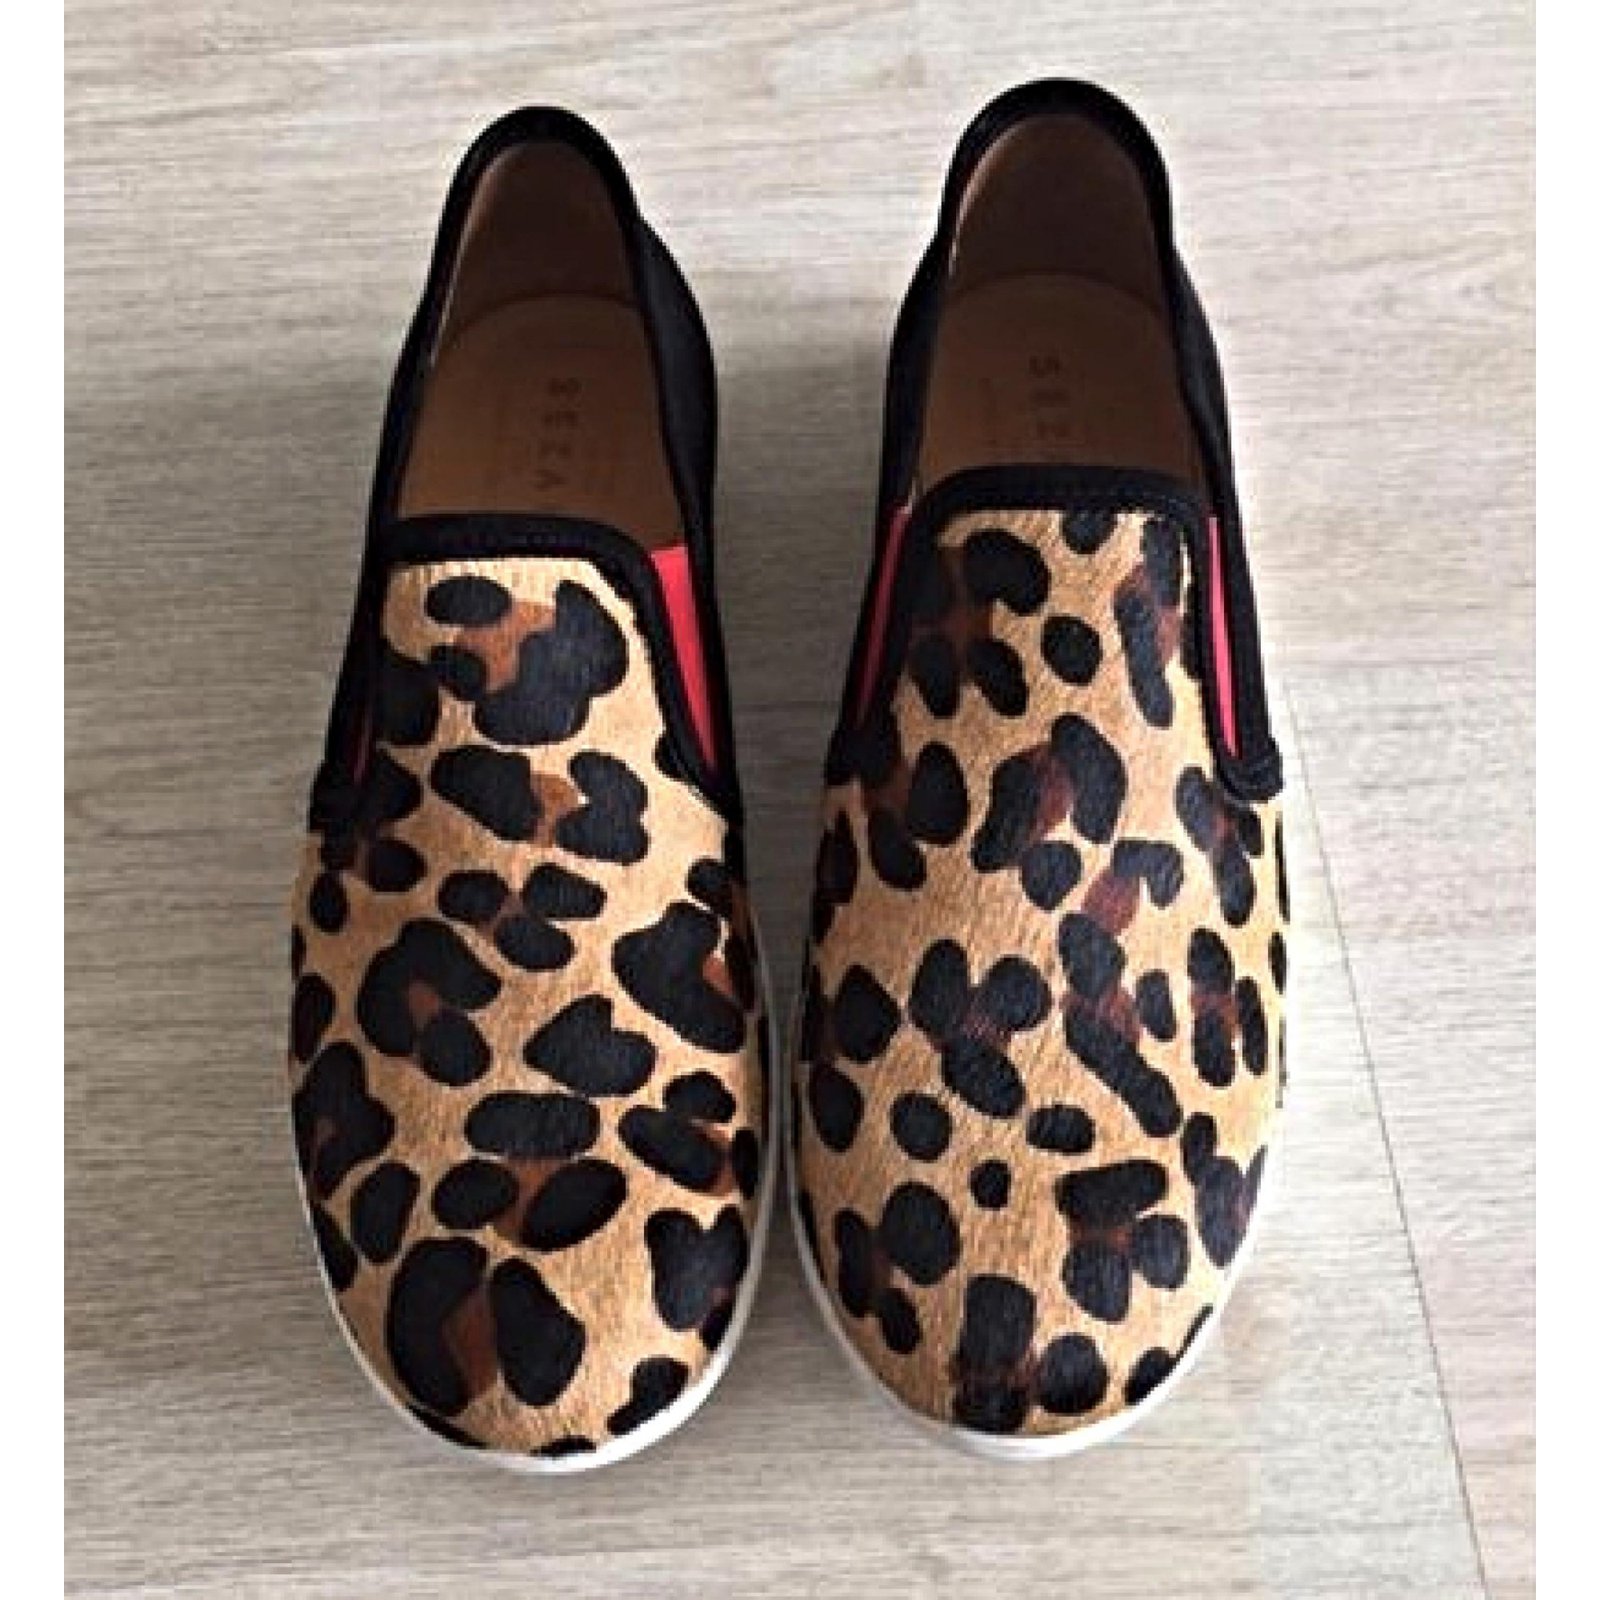 sezane leopard cipő shop db2b0 80e57